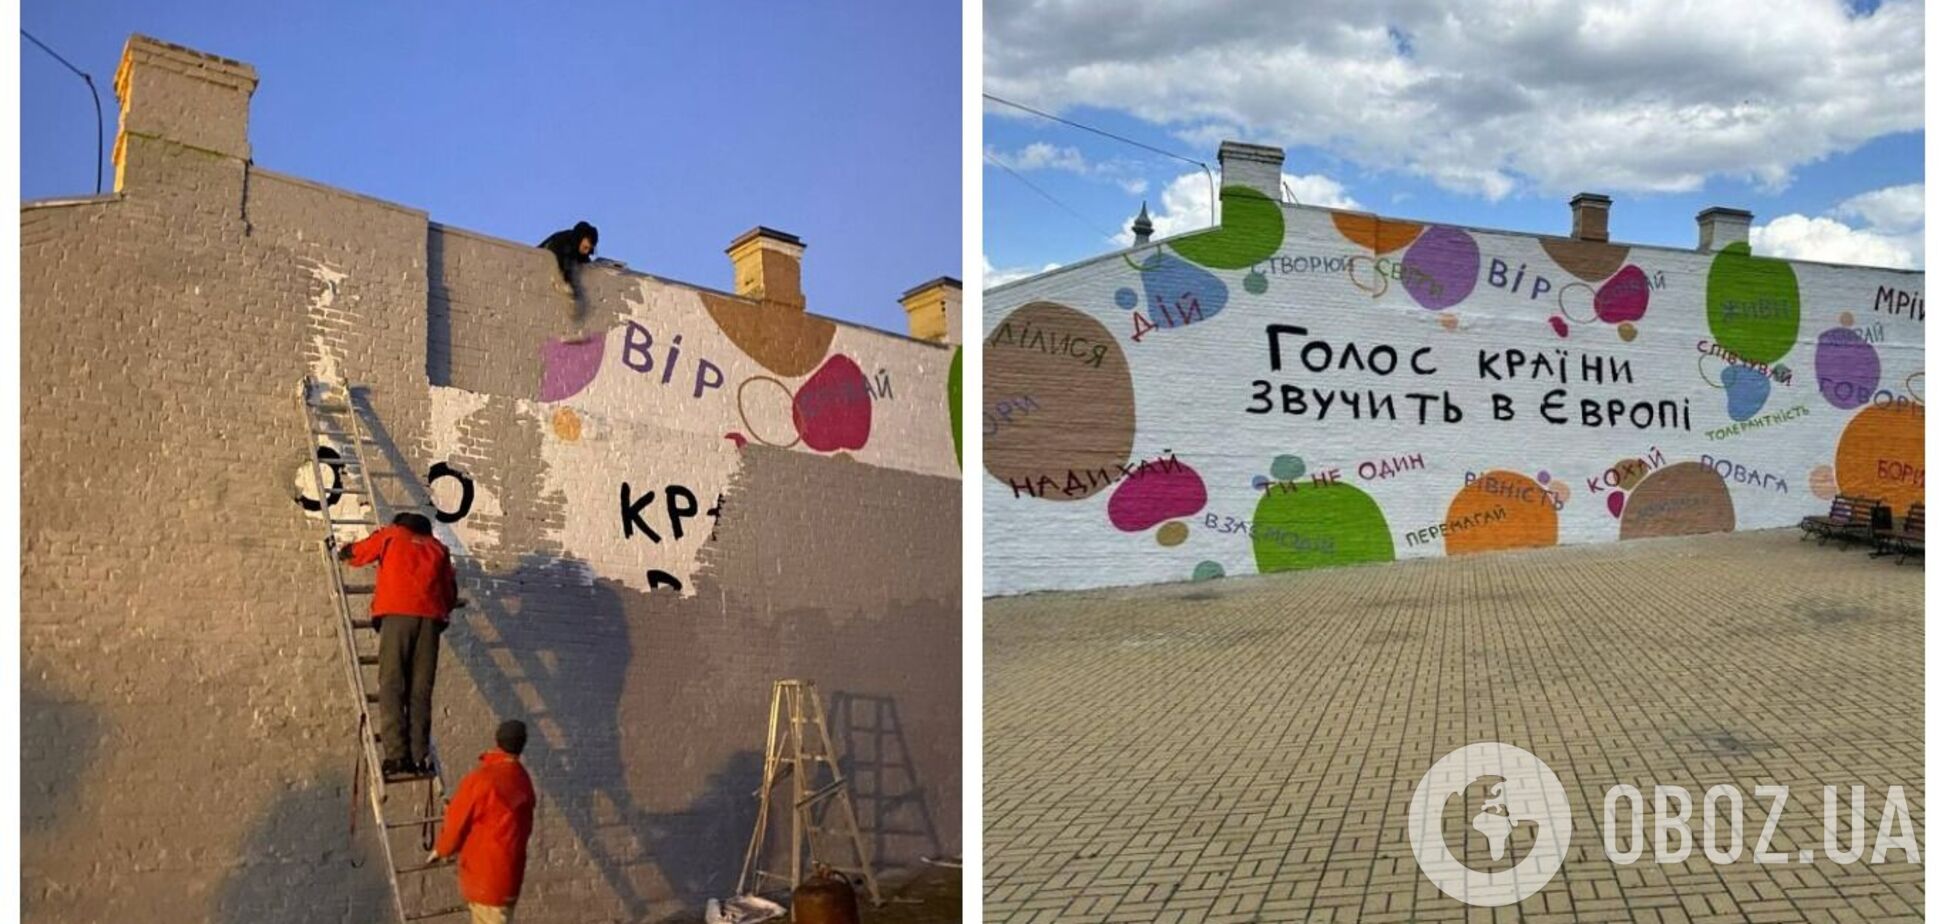 'Поверни вкрадене': у Києві зафарбували мурал Соні Морозюк. Фото